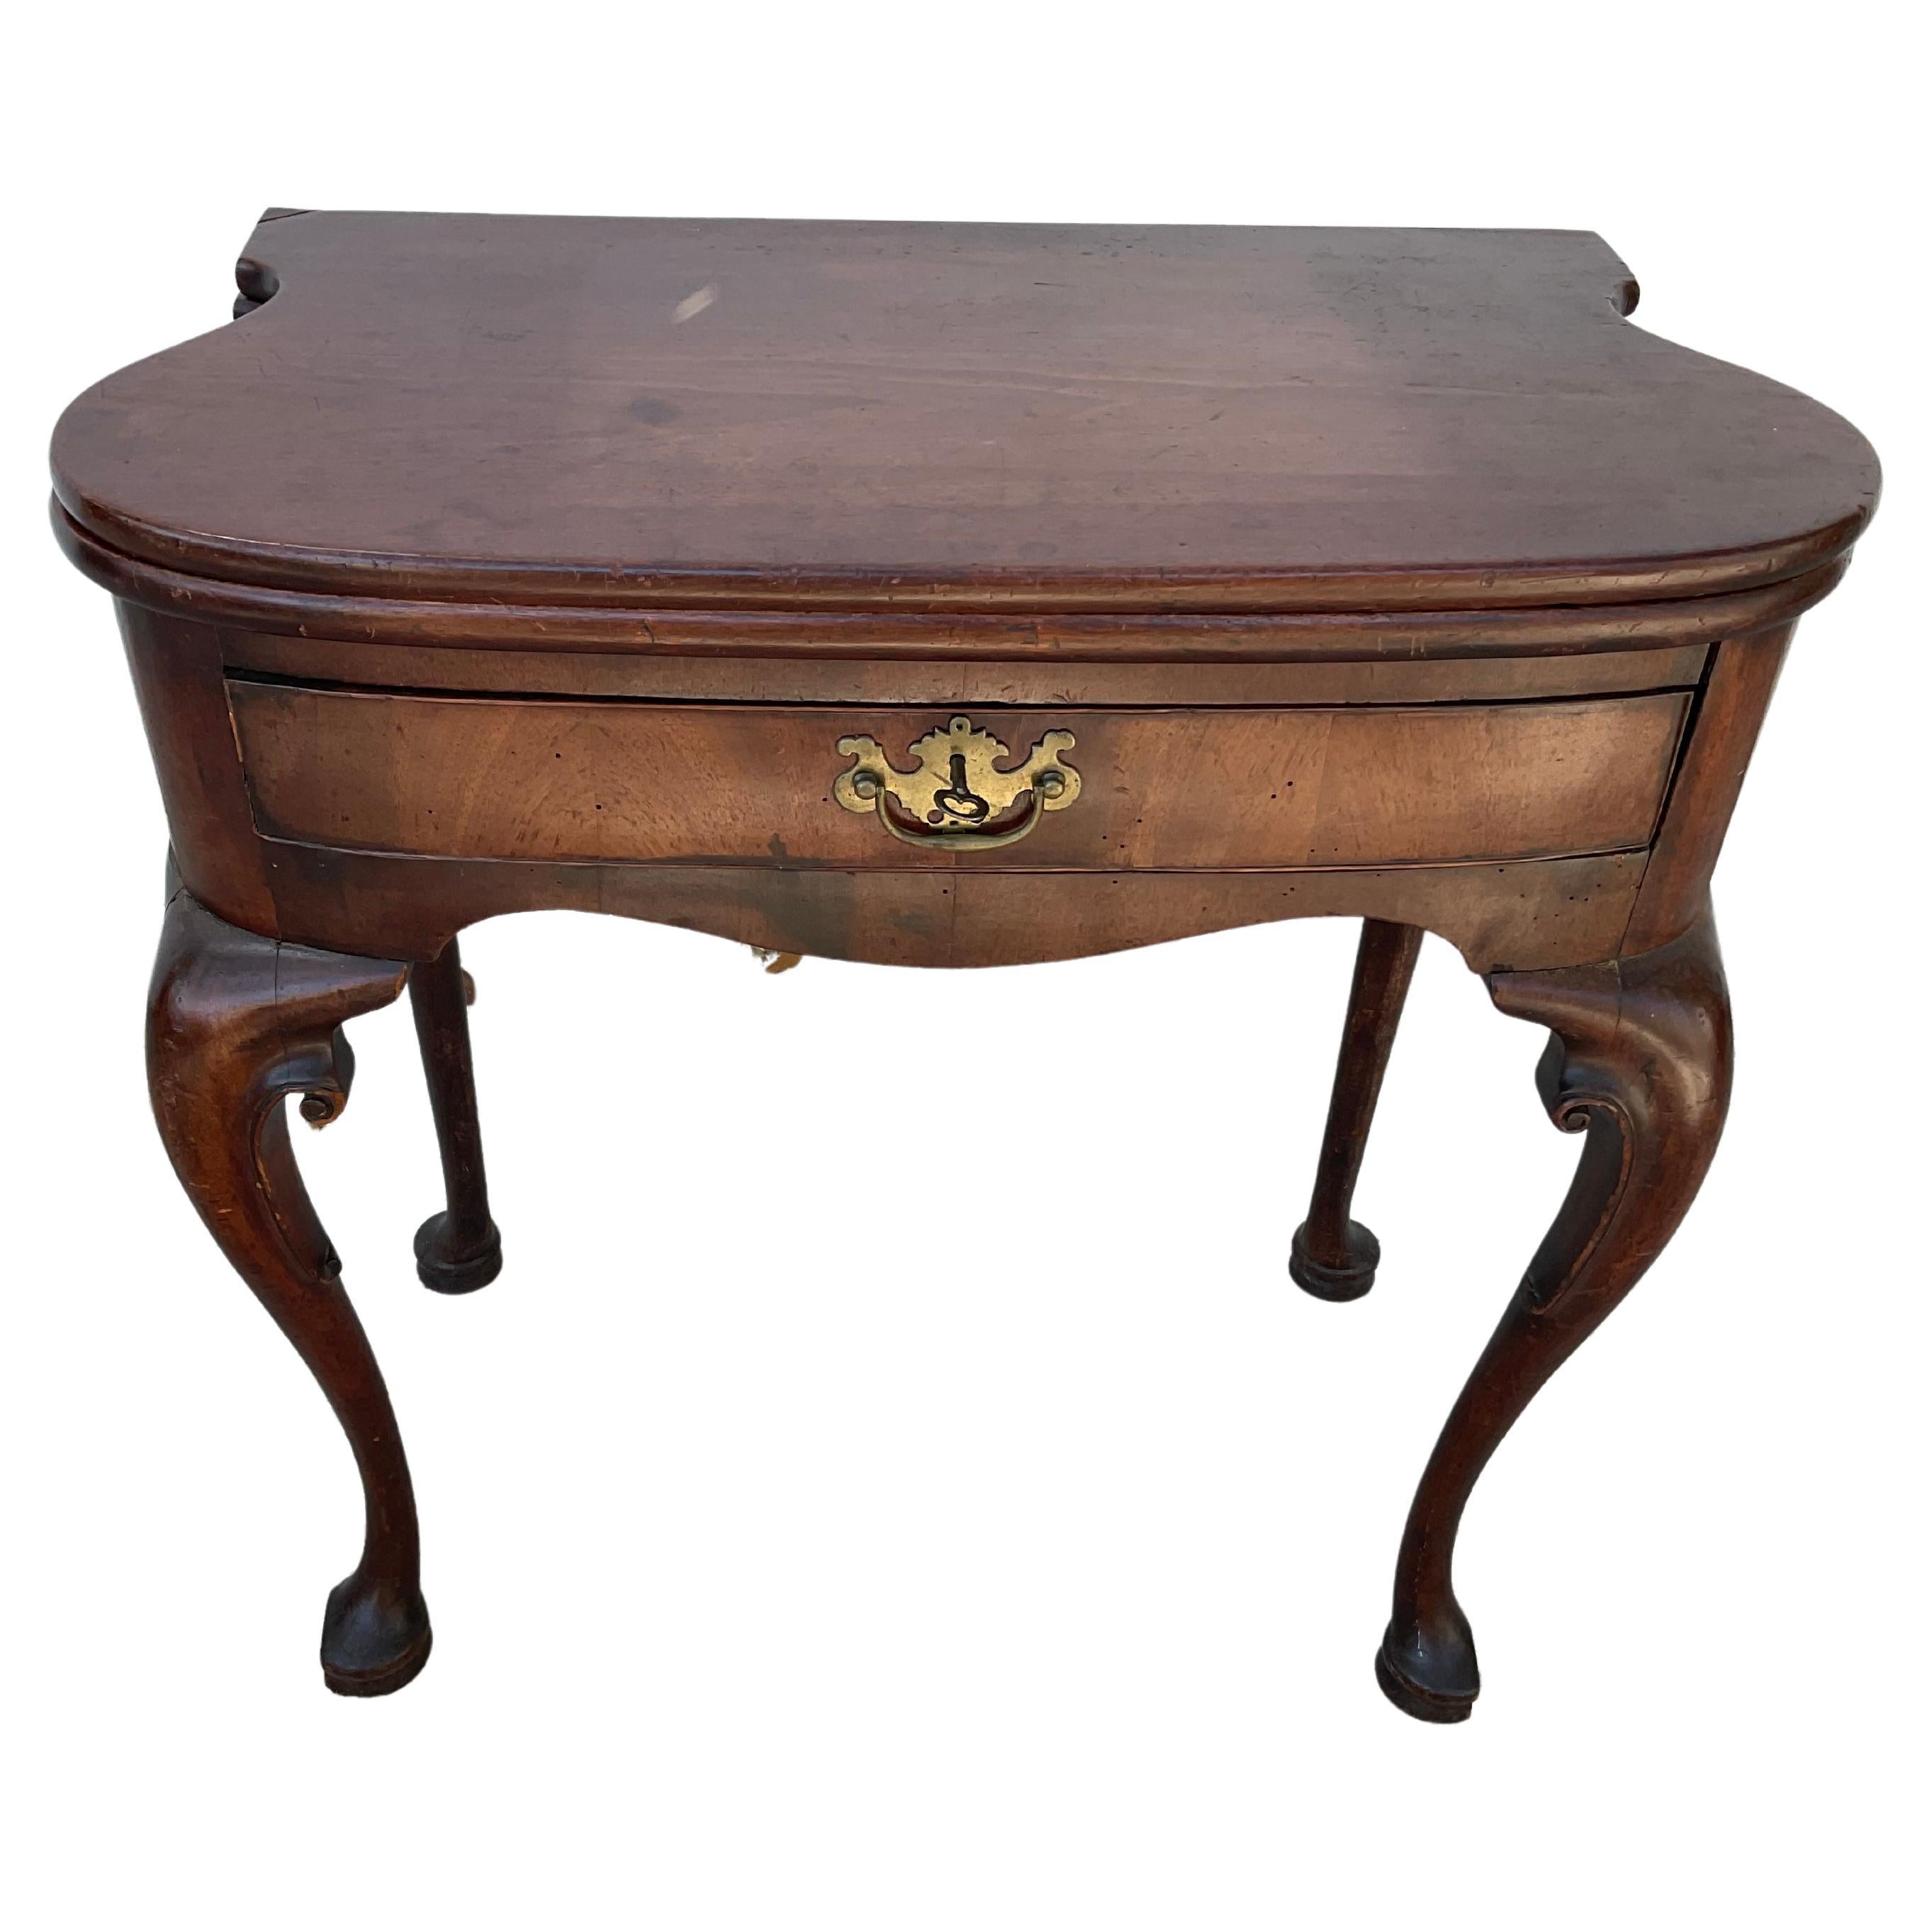 Table à jeux/thé du XVIIIe siècle en acajou de style George II. Il est doté d'un couvercle rabattable et d'un tiroir. La table mesure 30,75 pouces lorsqu'elle est ouverte. Il s'agit d'une forme rare dont les côtés sont exagérés. Merveilleuse patine